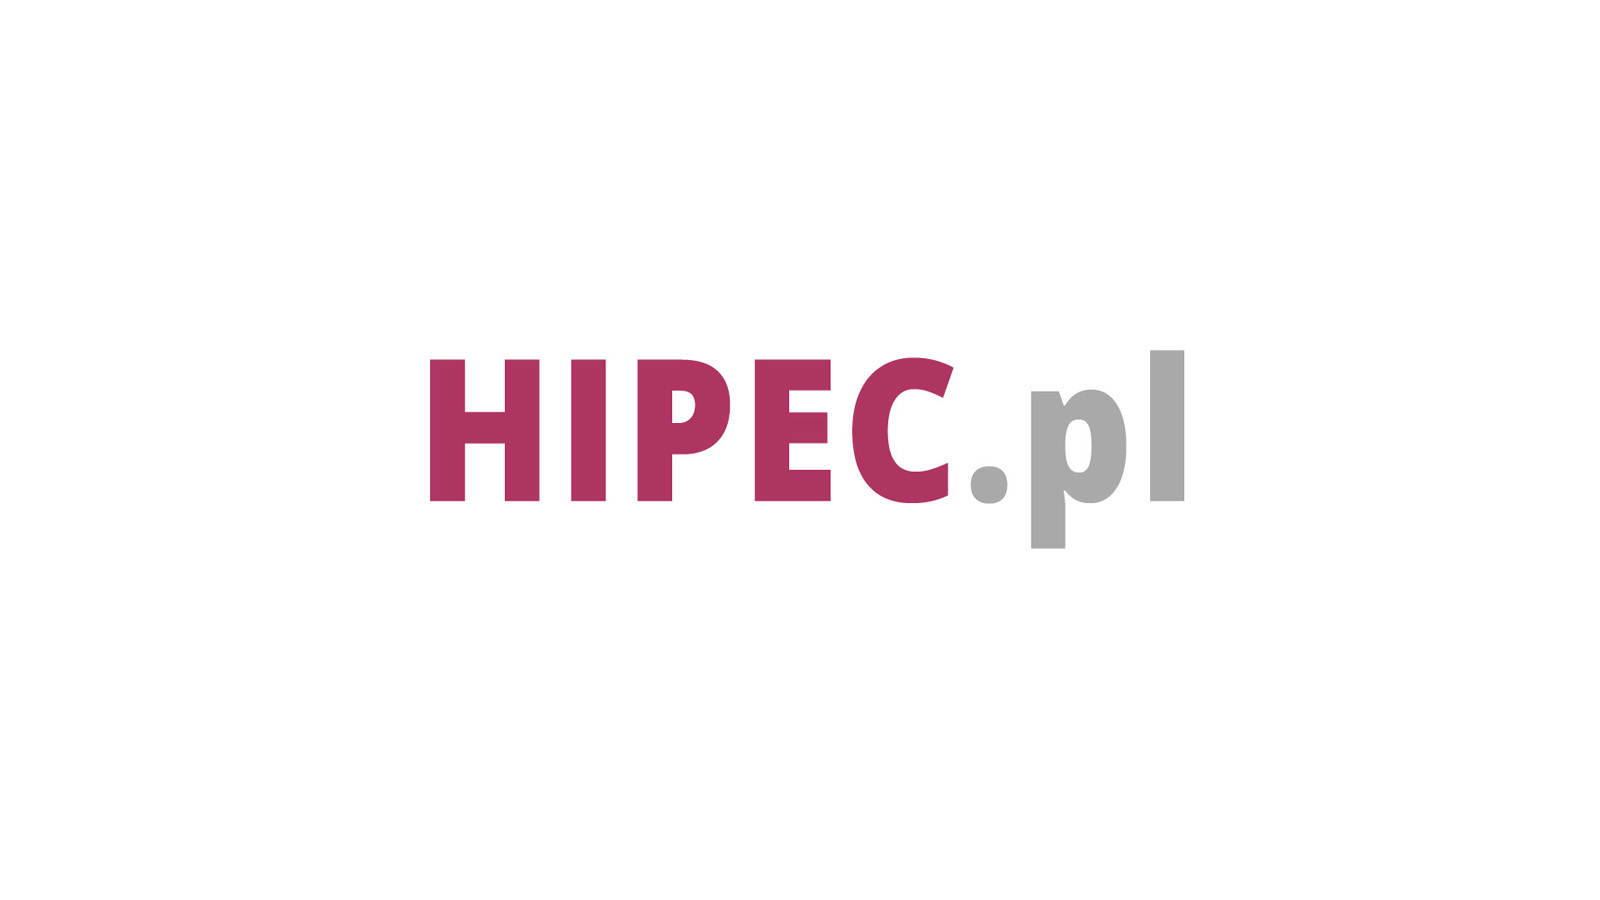  HIPEC.pl logo